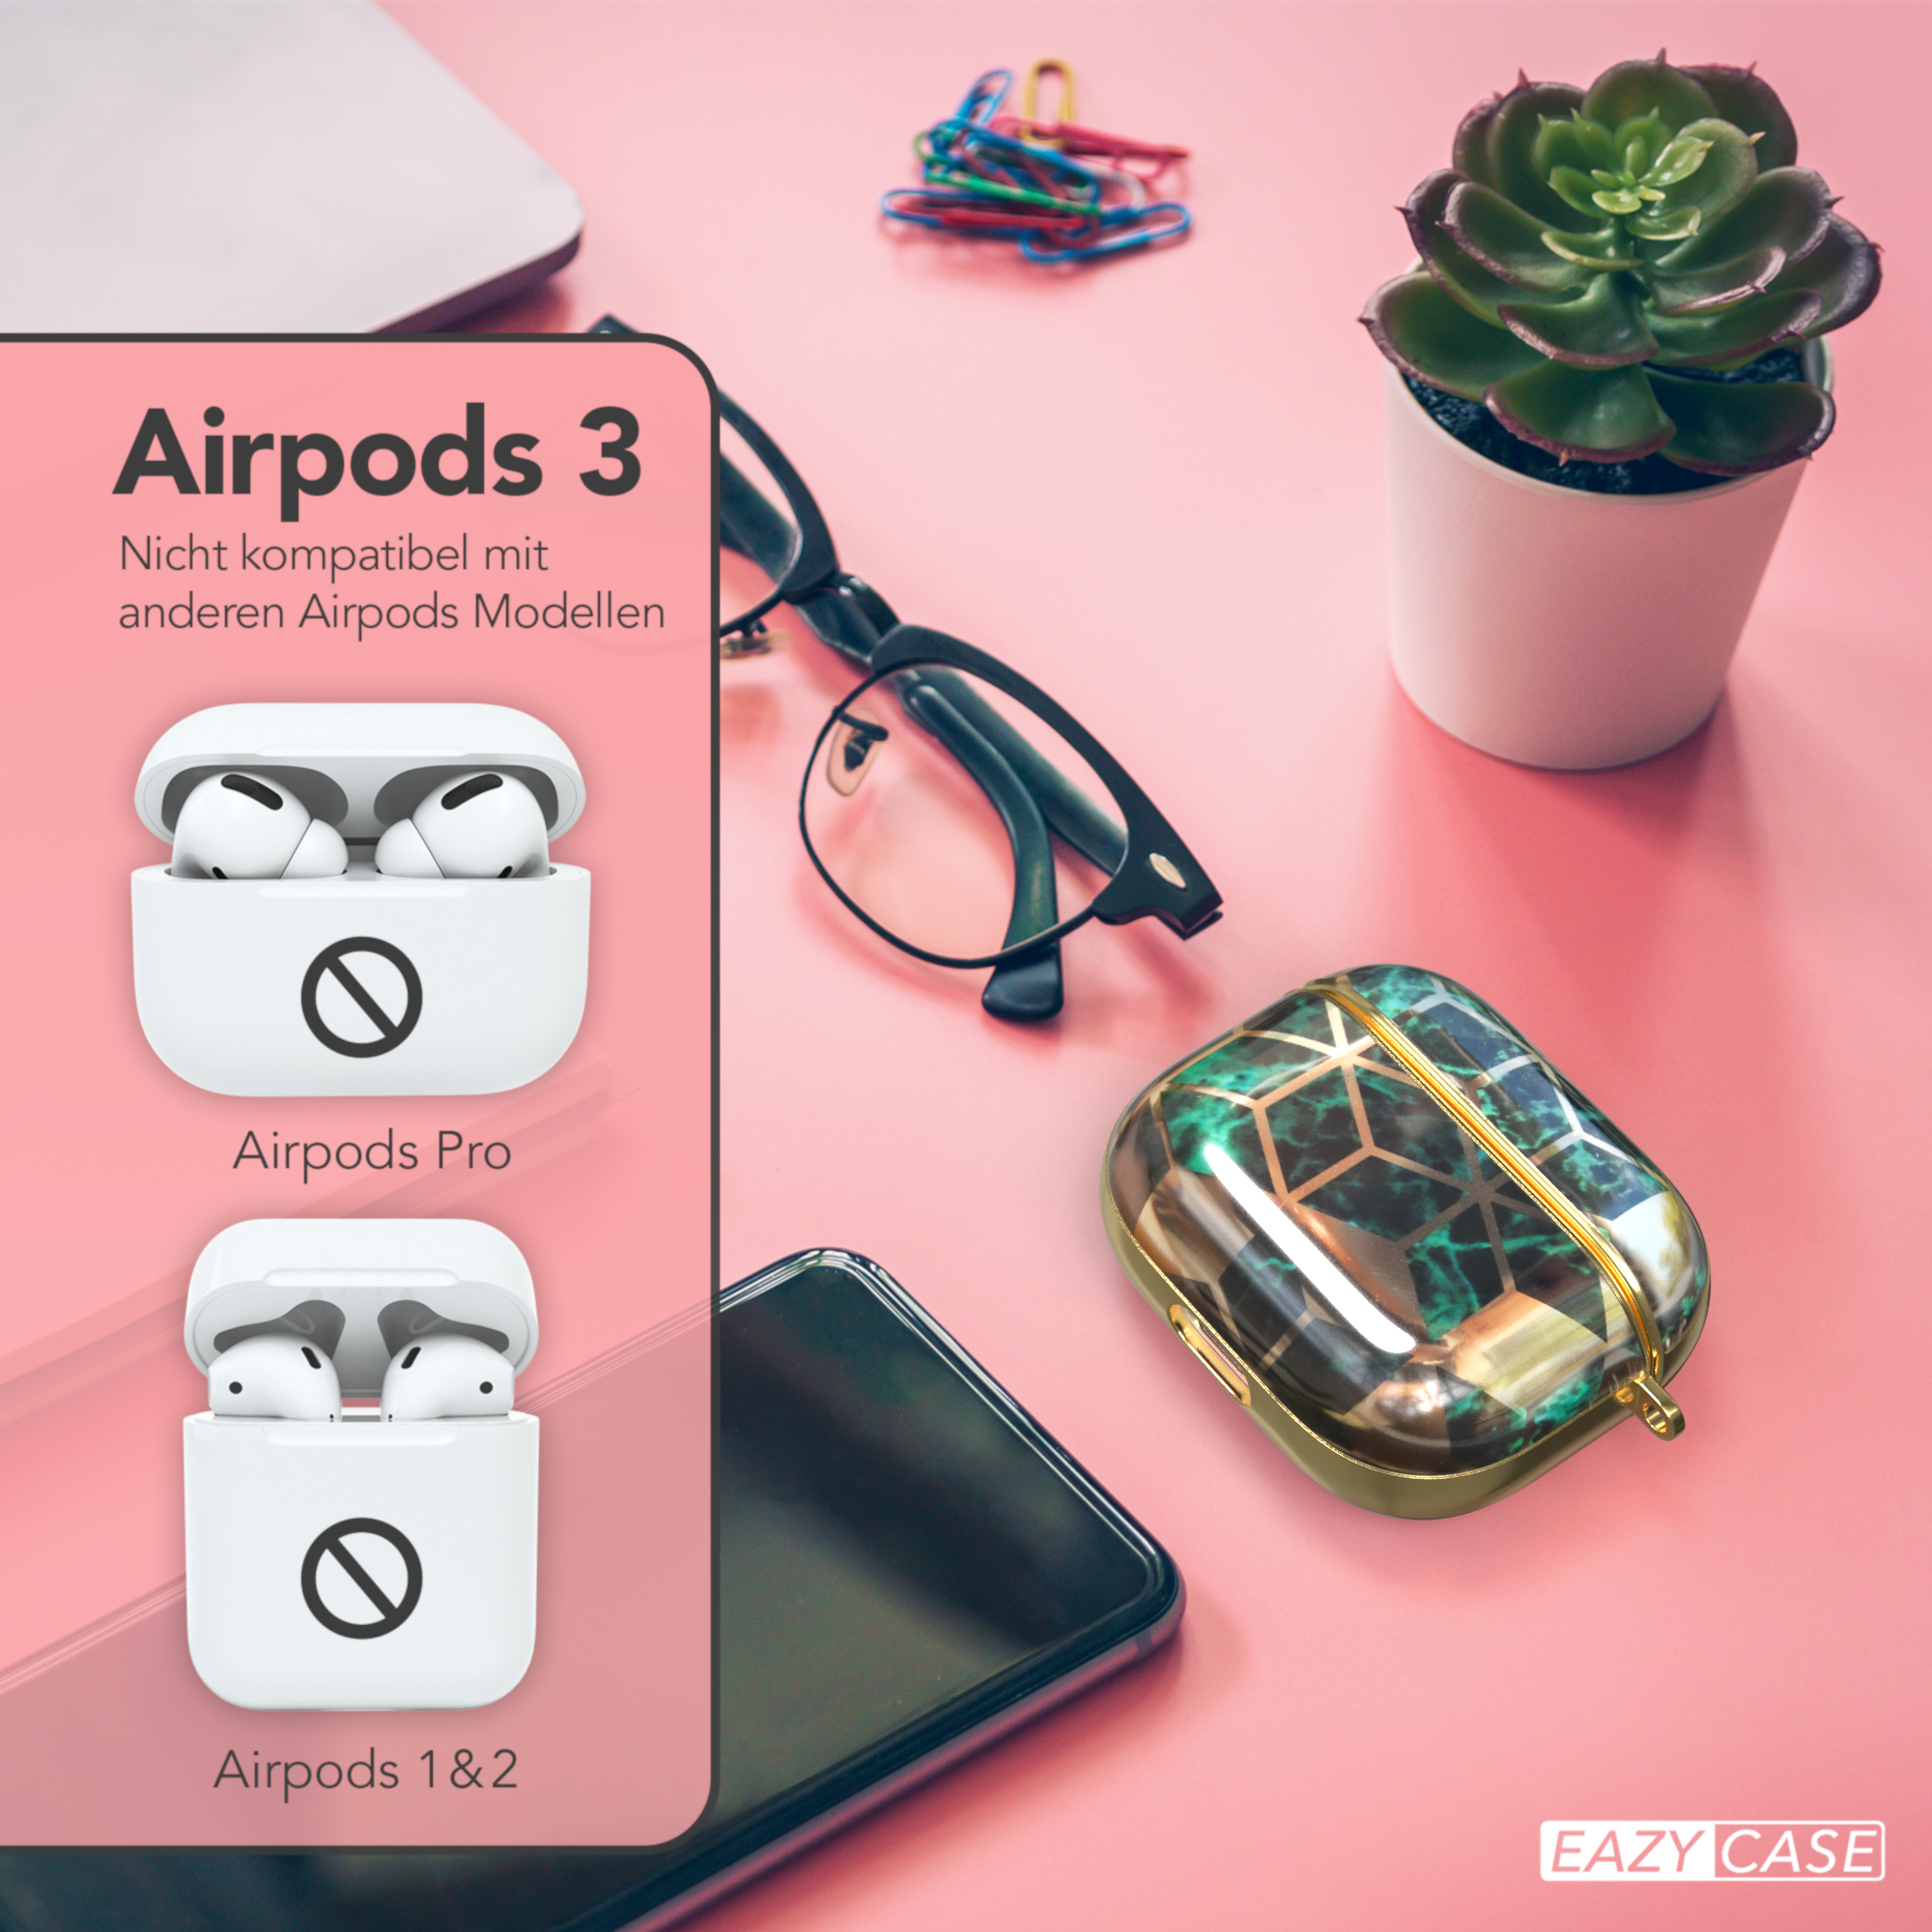 EAZY CASE AirPods 3 IMD für: Apple Gold Case Schutzhülle Grün Motiv passend / Sleeve